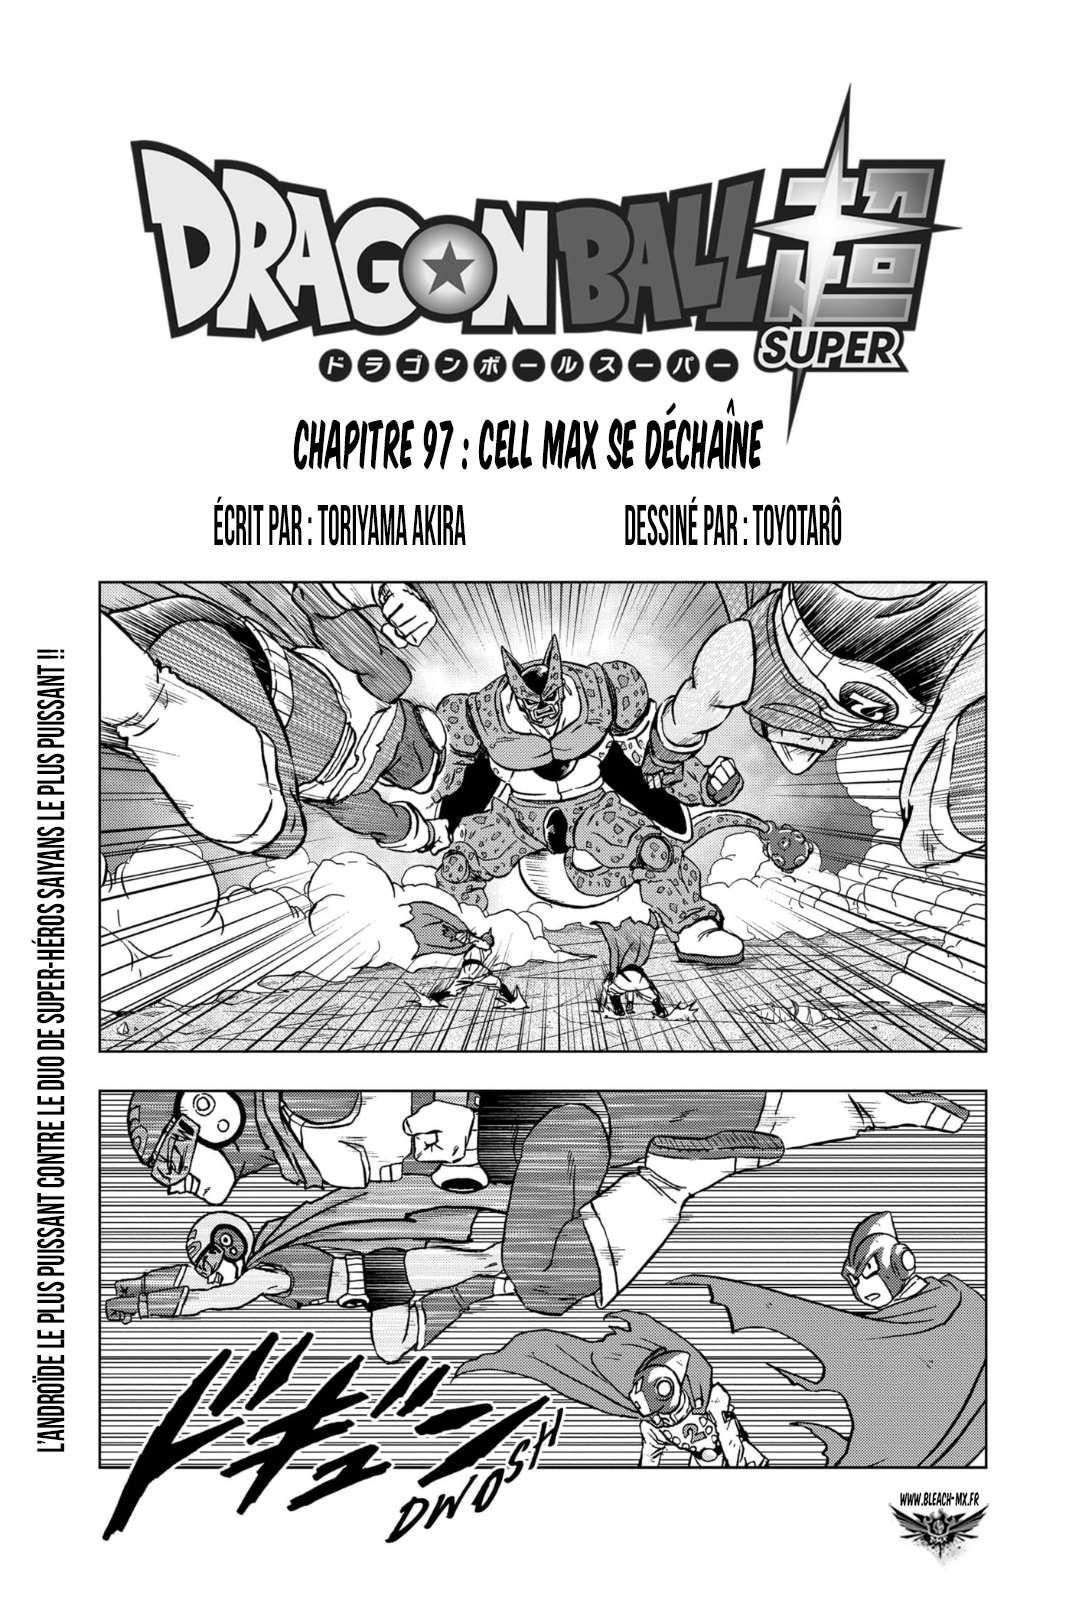  Dragon Ball Super 097 Page 1